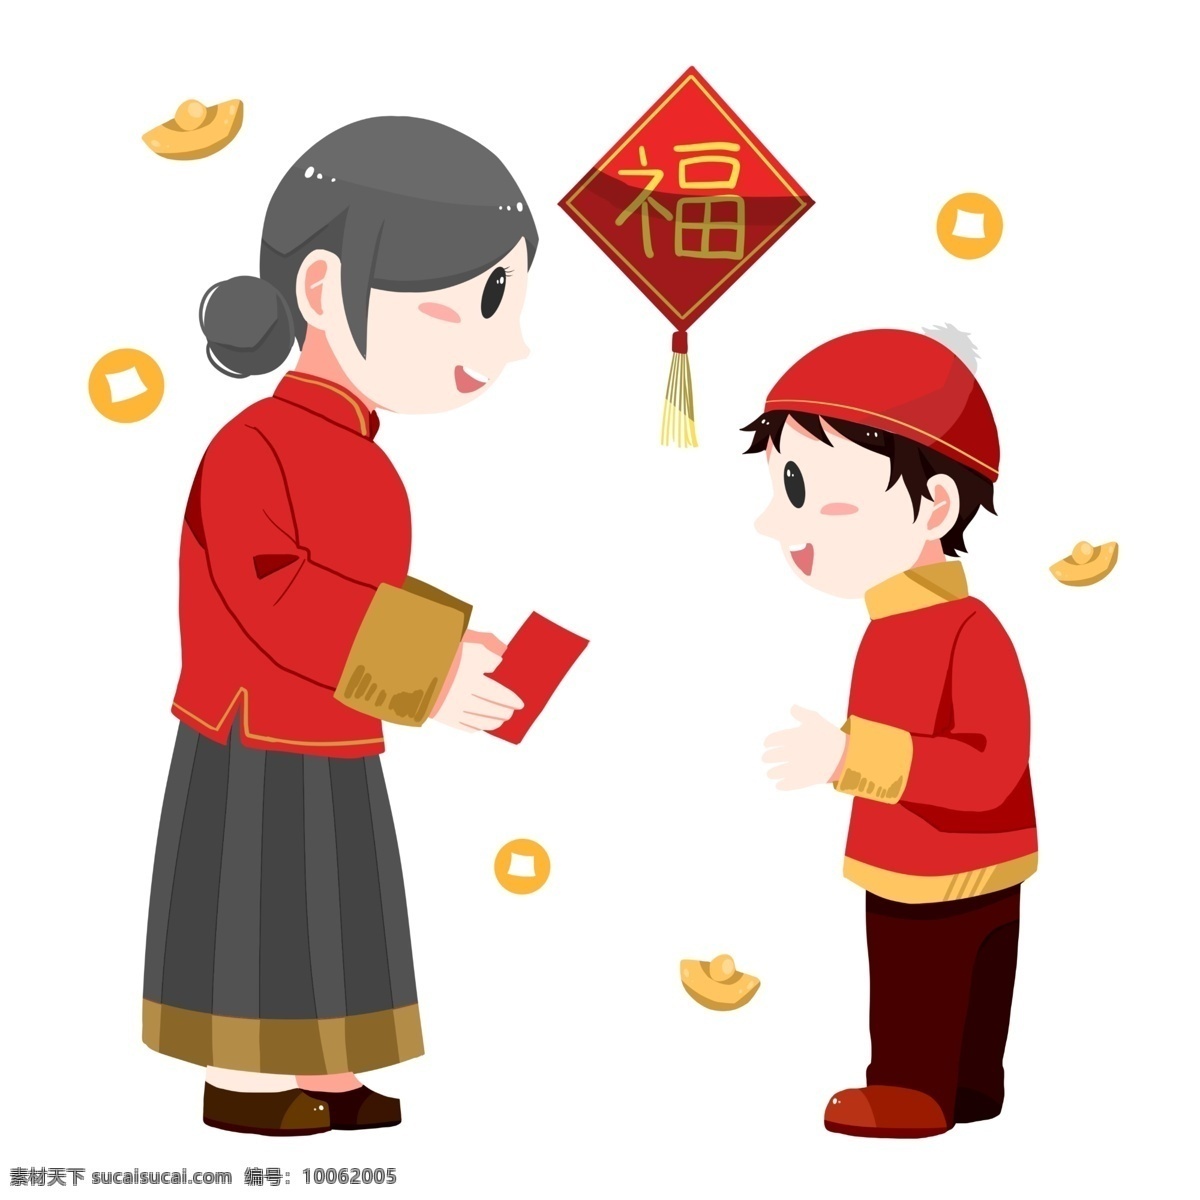 卡通 手绘 新年 拜年 发红 包 过年 拜年啦 福字 金元宝 金币 喜庆的服装 发红包 给红包 红包 给孩子发红包